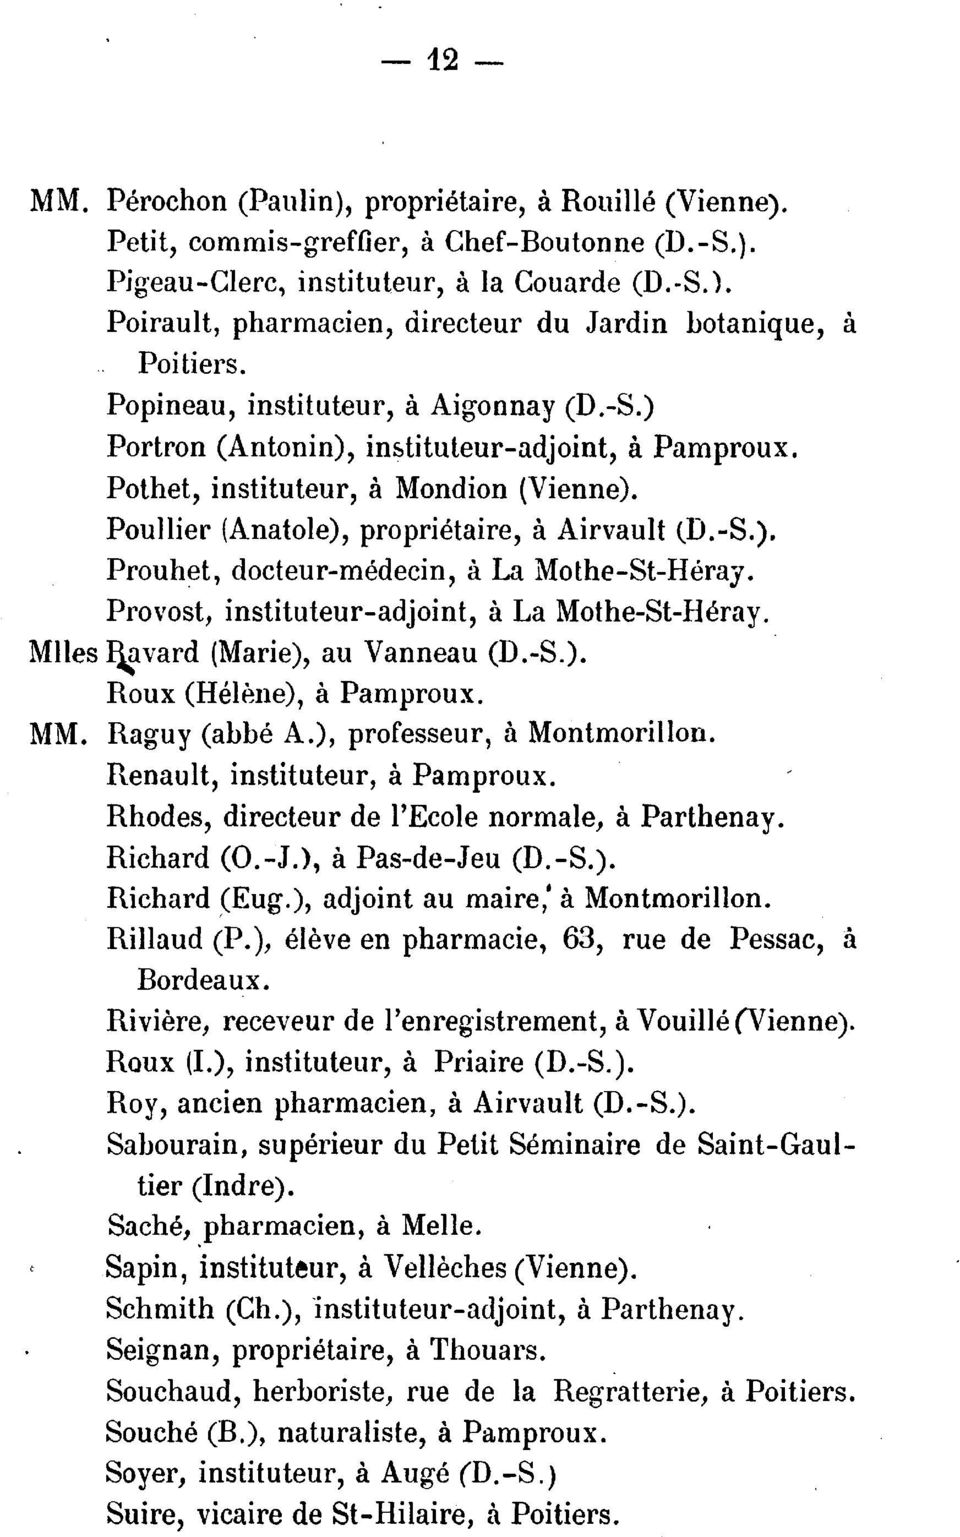 Provost, instituteur-adjoint, a La Mothe-St-Heray. Miles ~vard (Marie), au Vanneau (D.-S.). Roux (Heli~ne), a Pamproux. MM. Raguy (abbe A.), professeur, a Montmorillon.